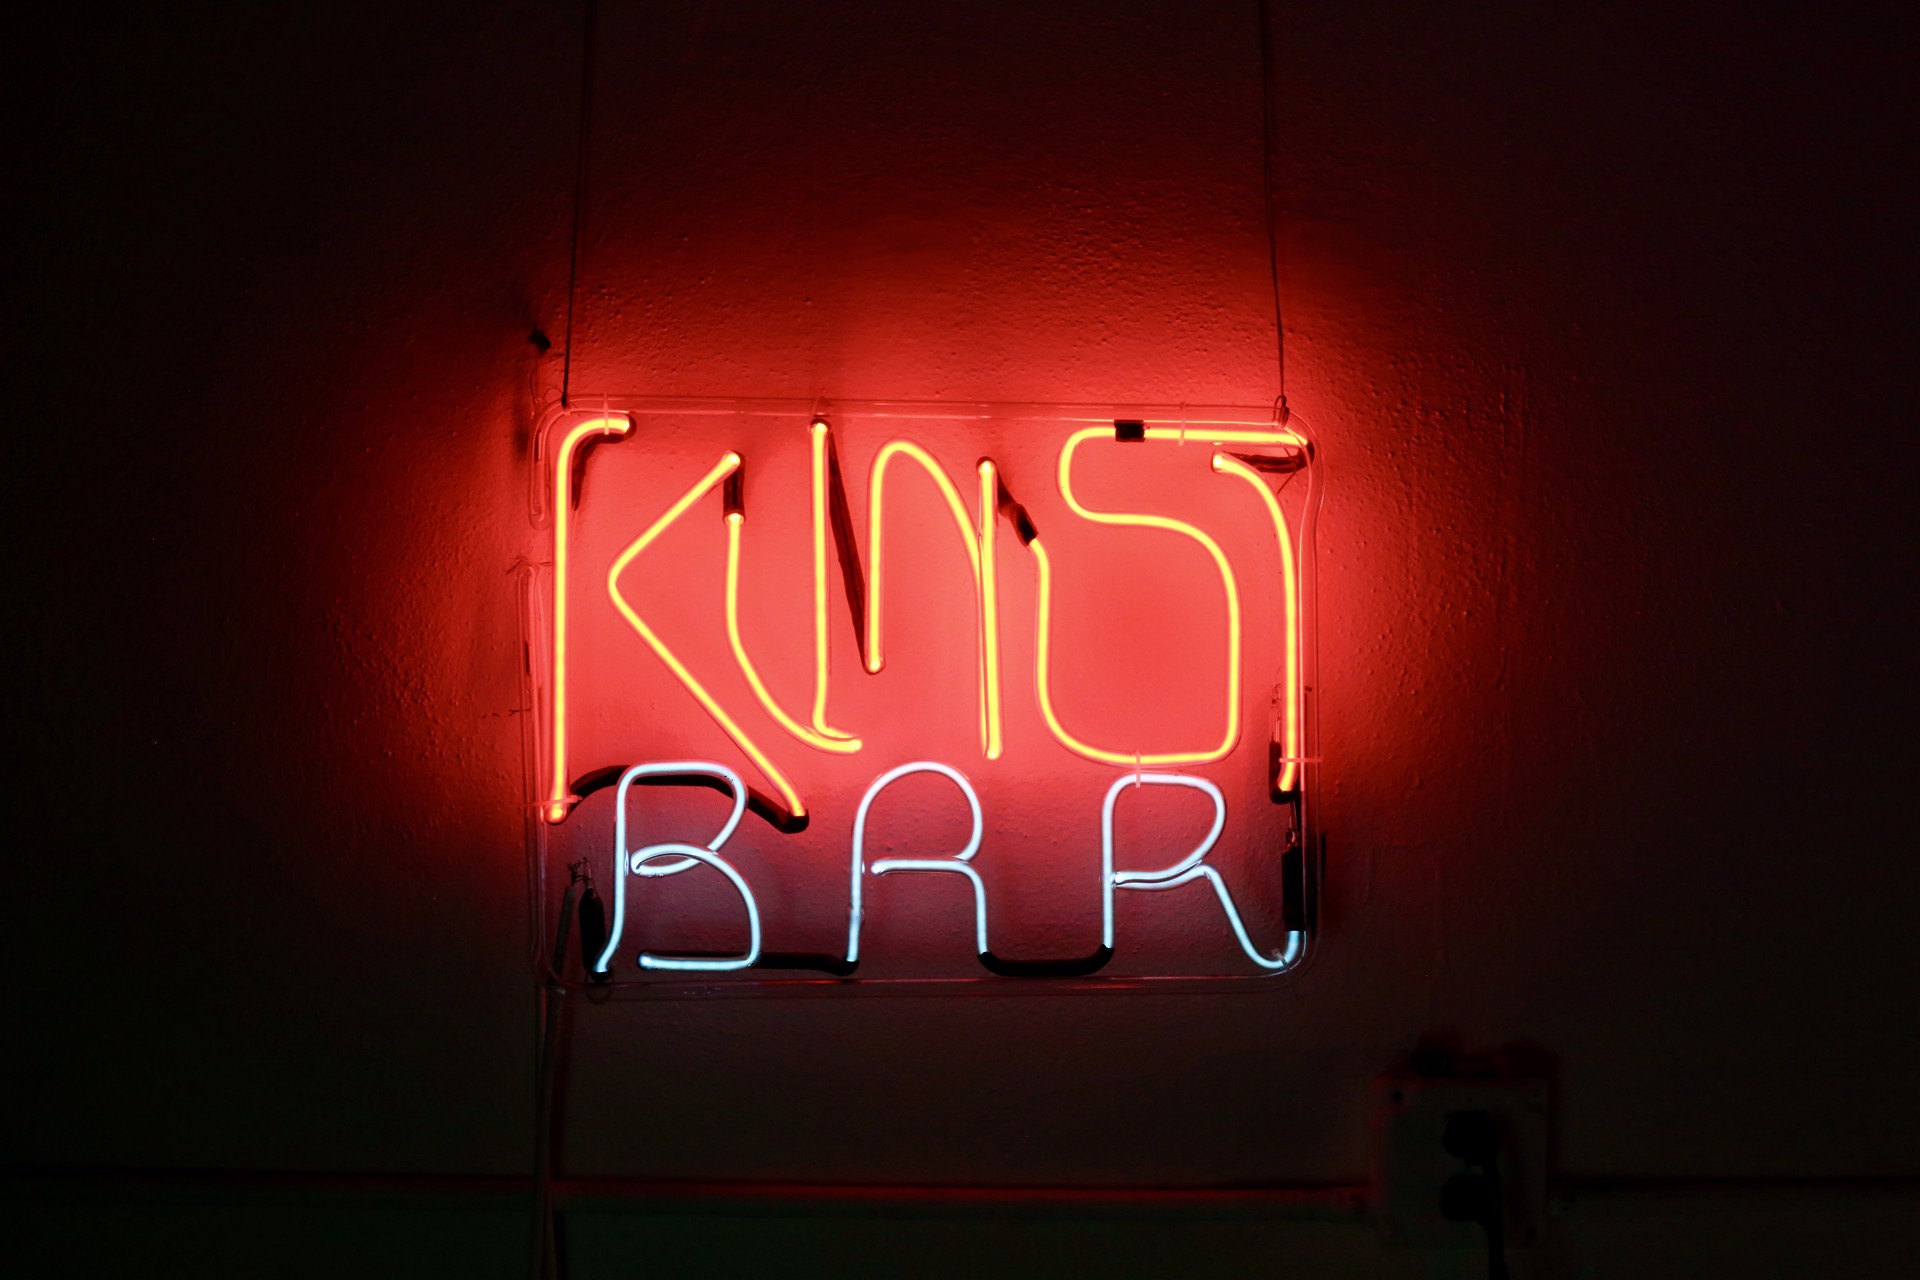 Kuntz Bar by Yale Wolf